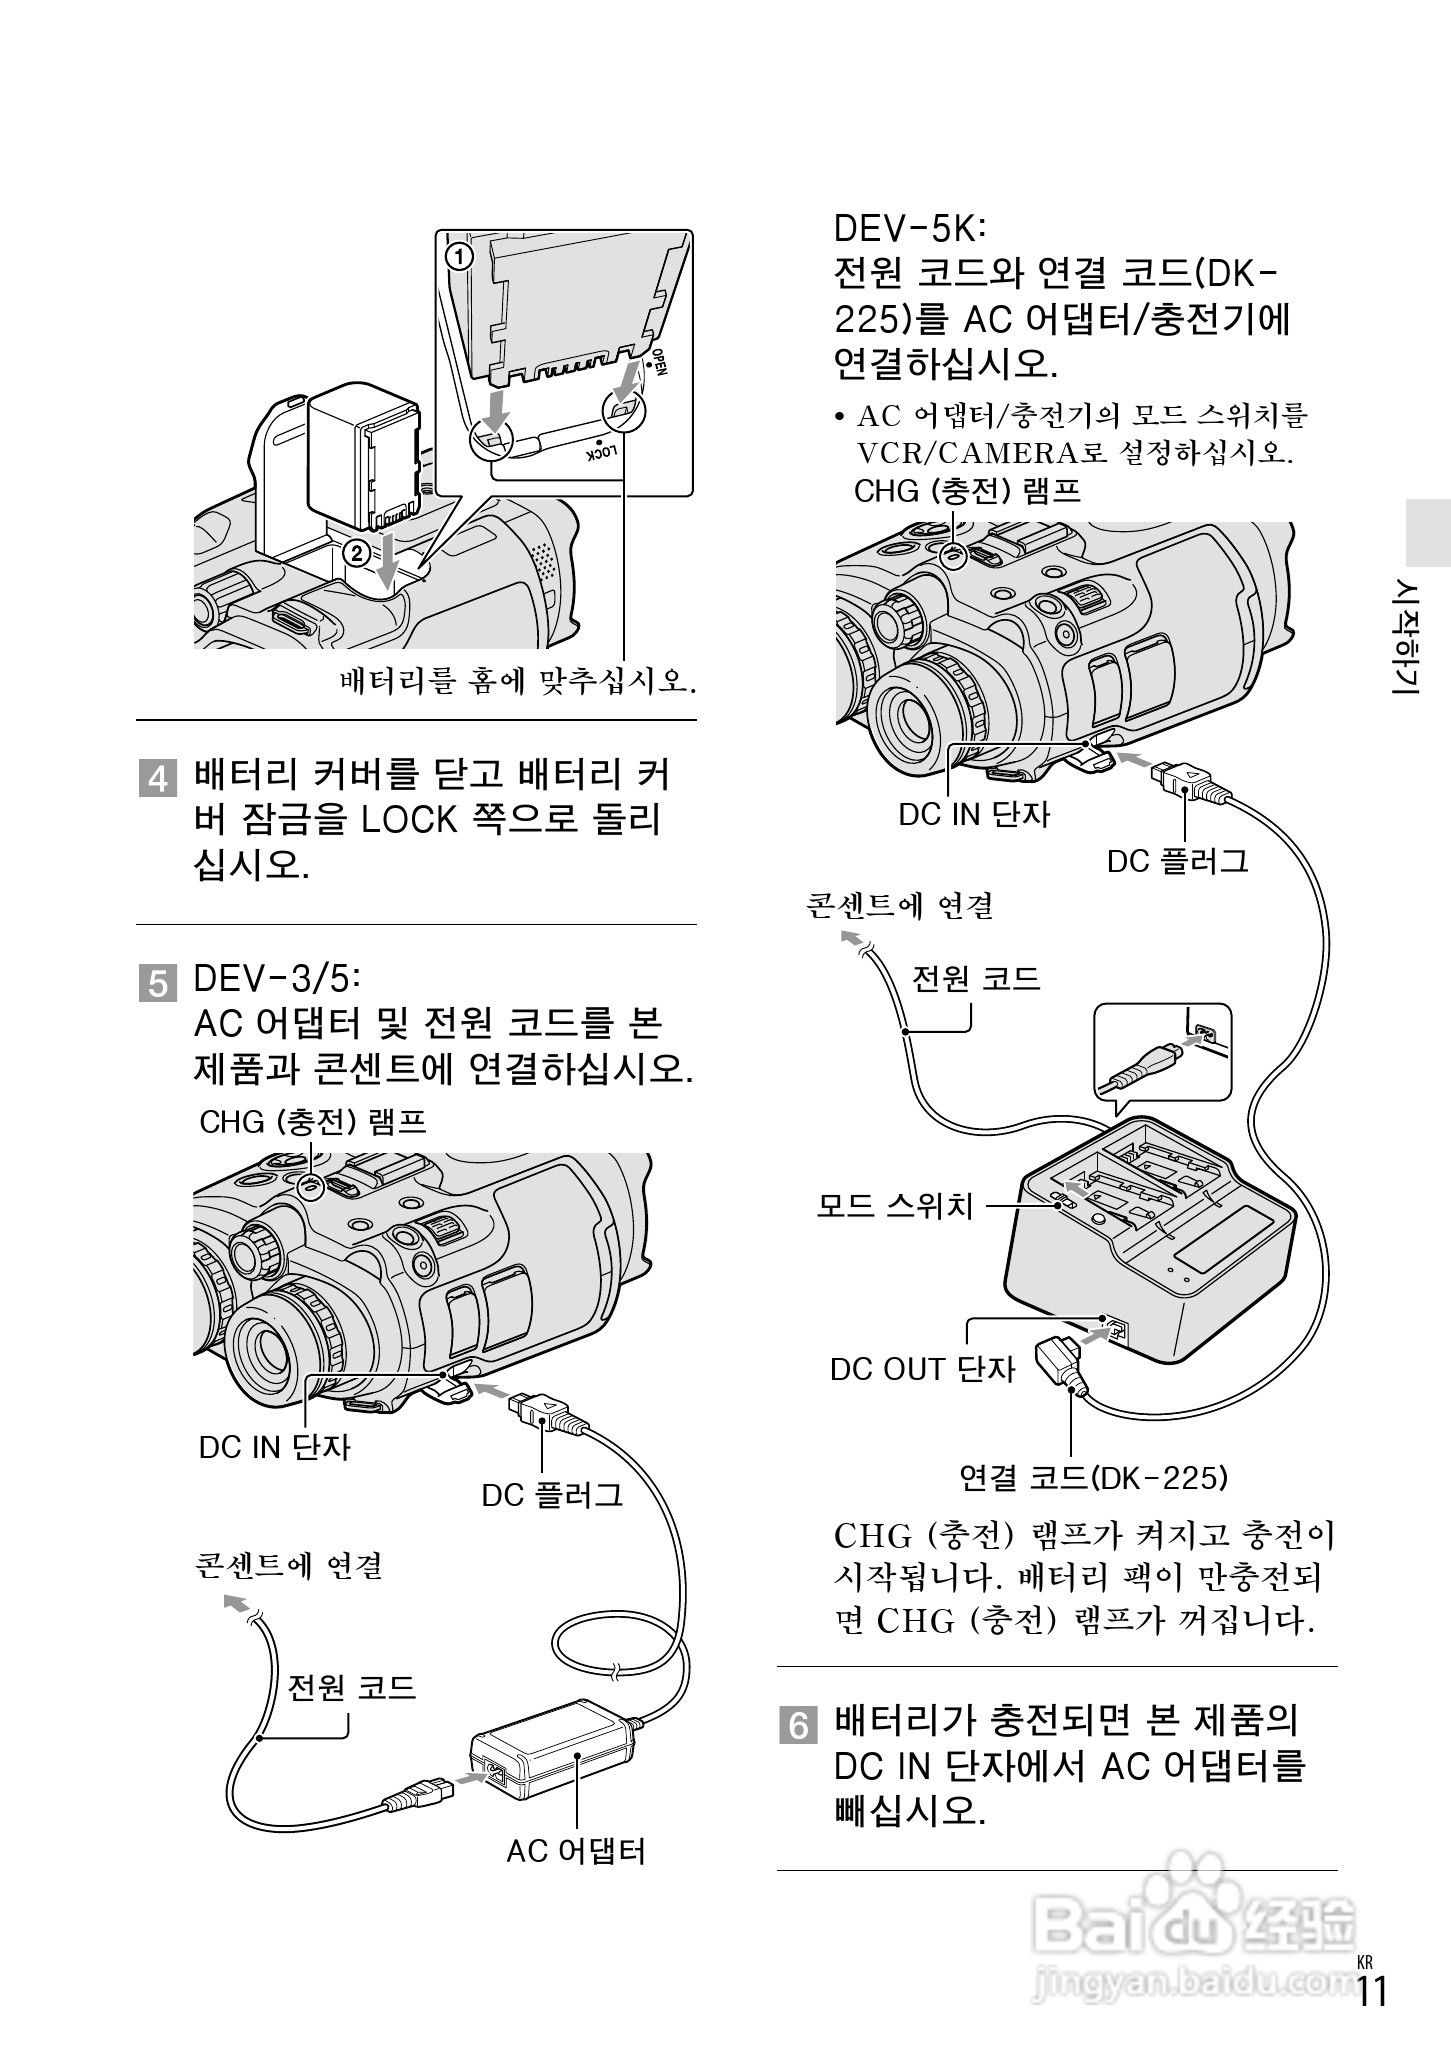 《索尼dev-5k数码摄相机使用说明书》,主要介绍该产品的使用方法以及